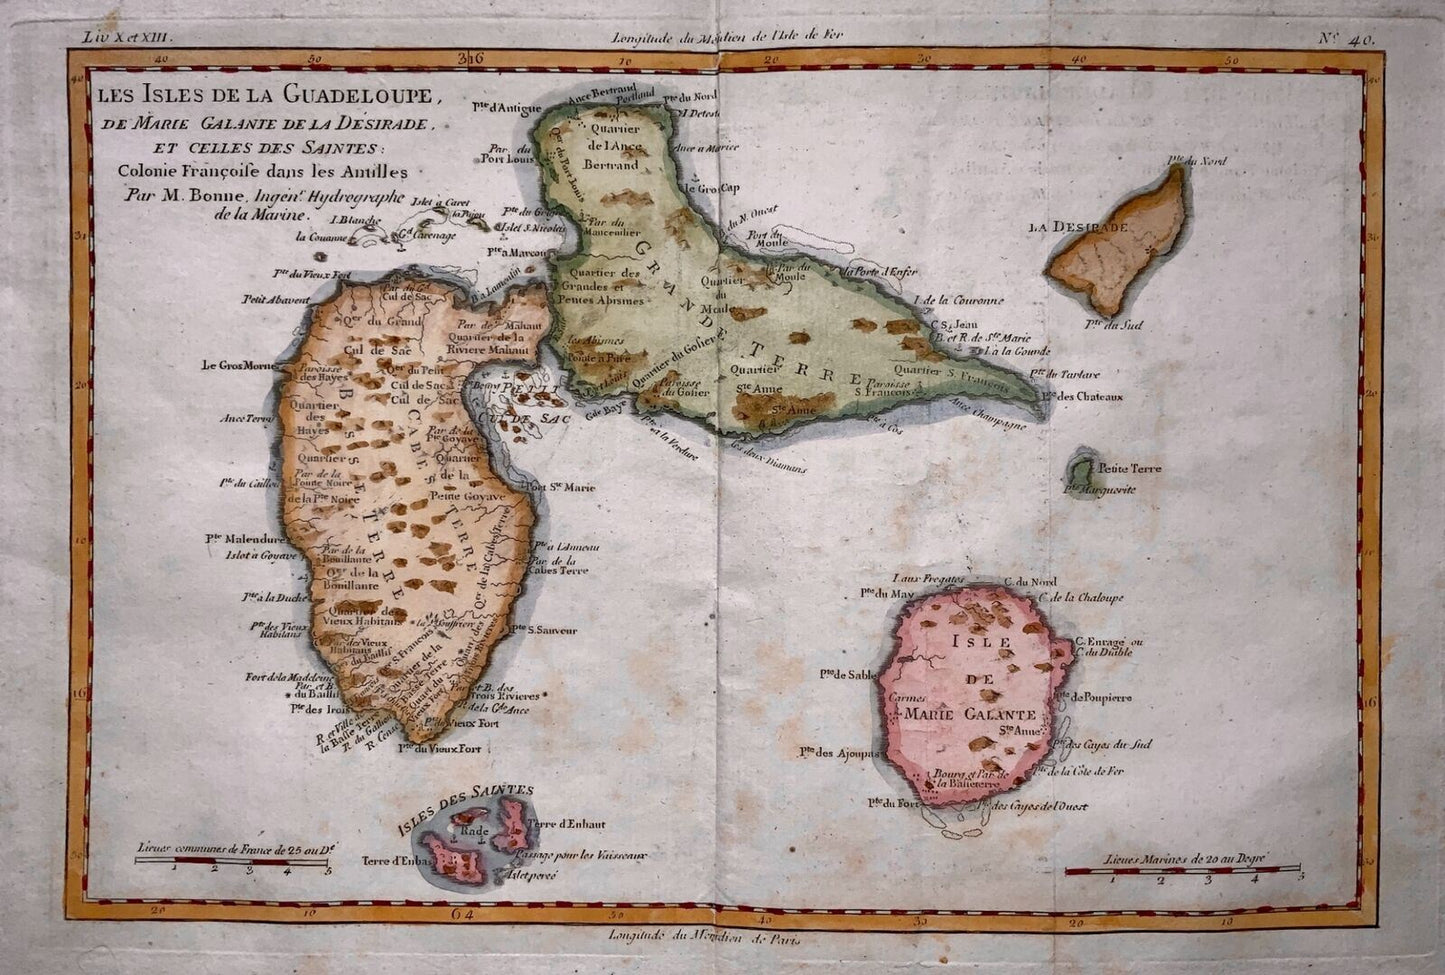 Mappa colorata a mano di Bonne, Isole dei Caraibi della Guadalupa e della Martinica del 1780